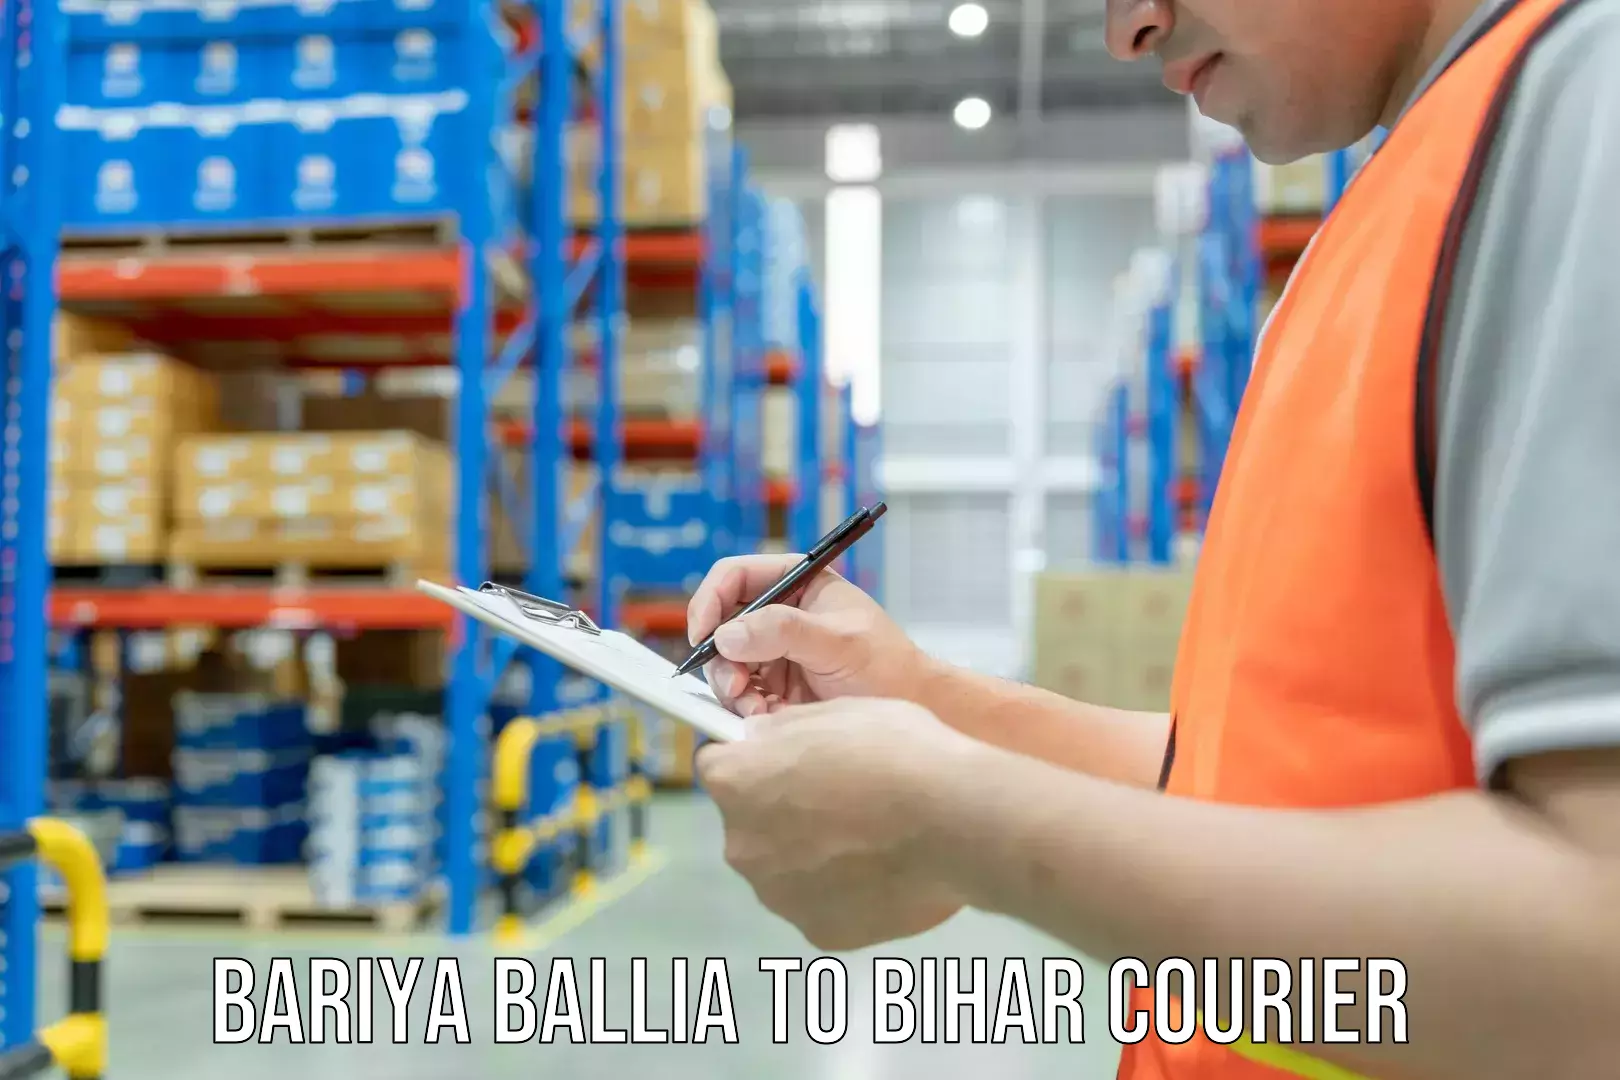 24/7 shipping services Bariya Ballia to Bihar